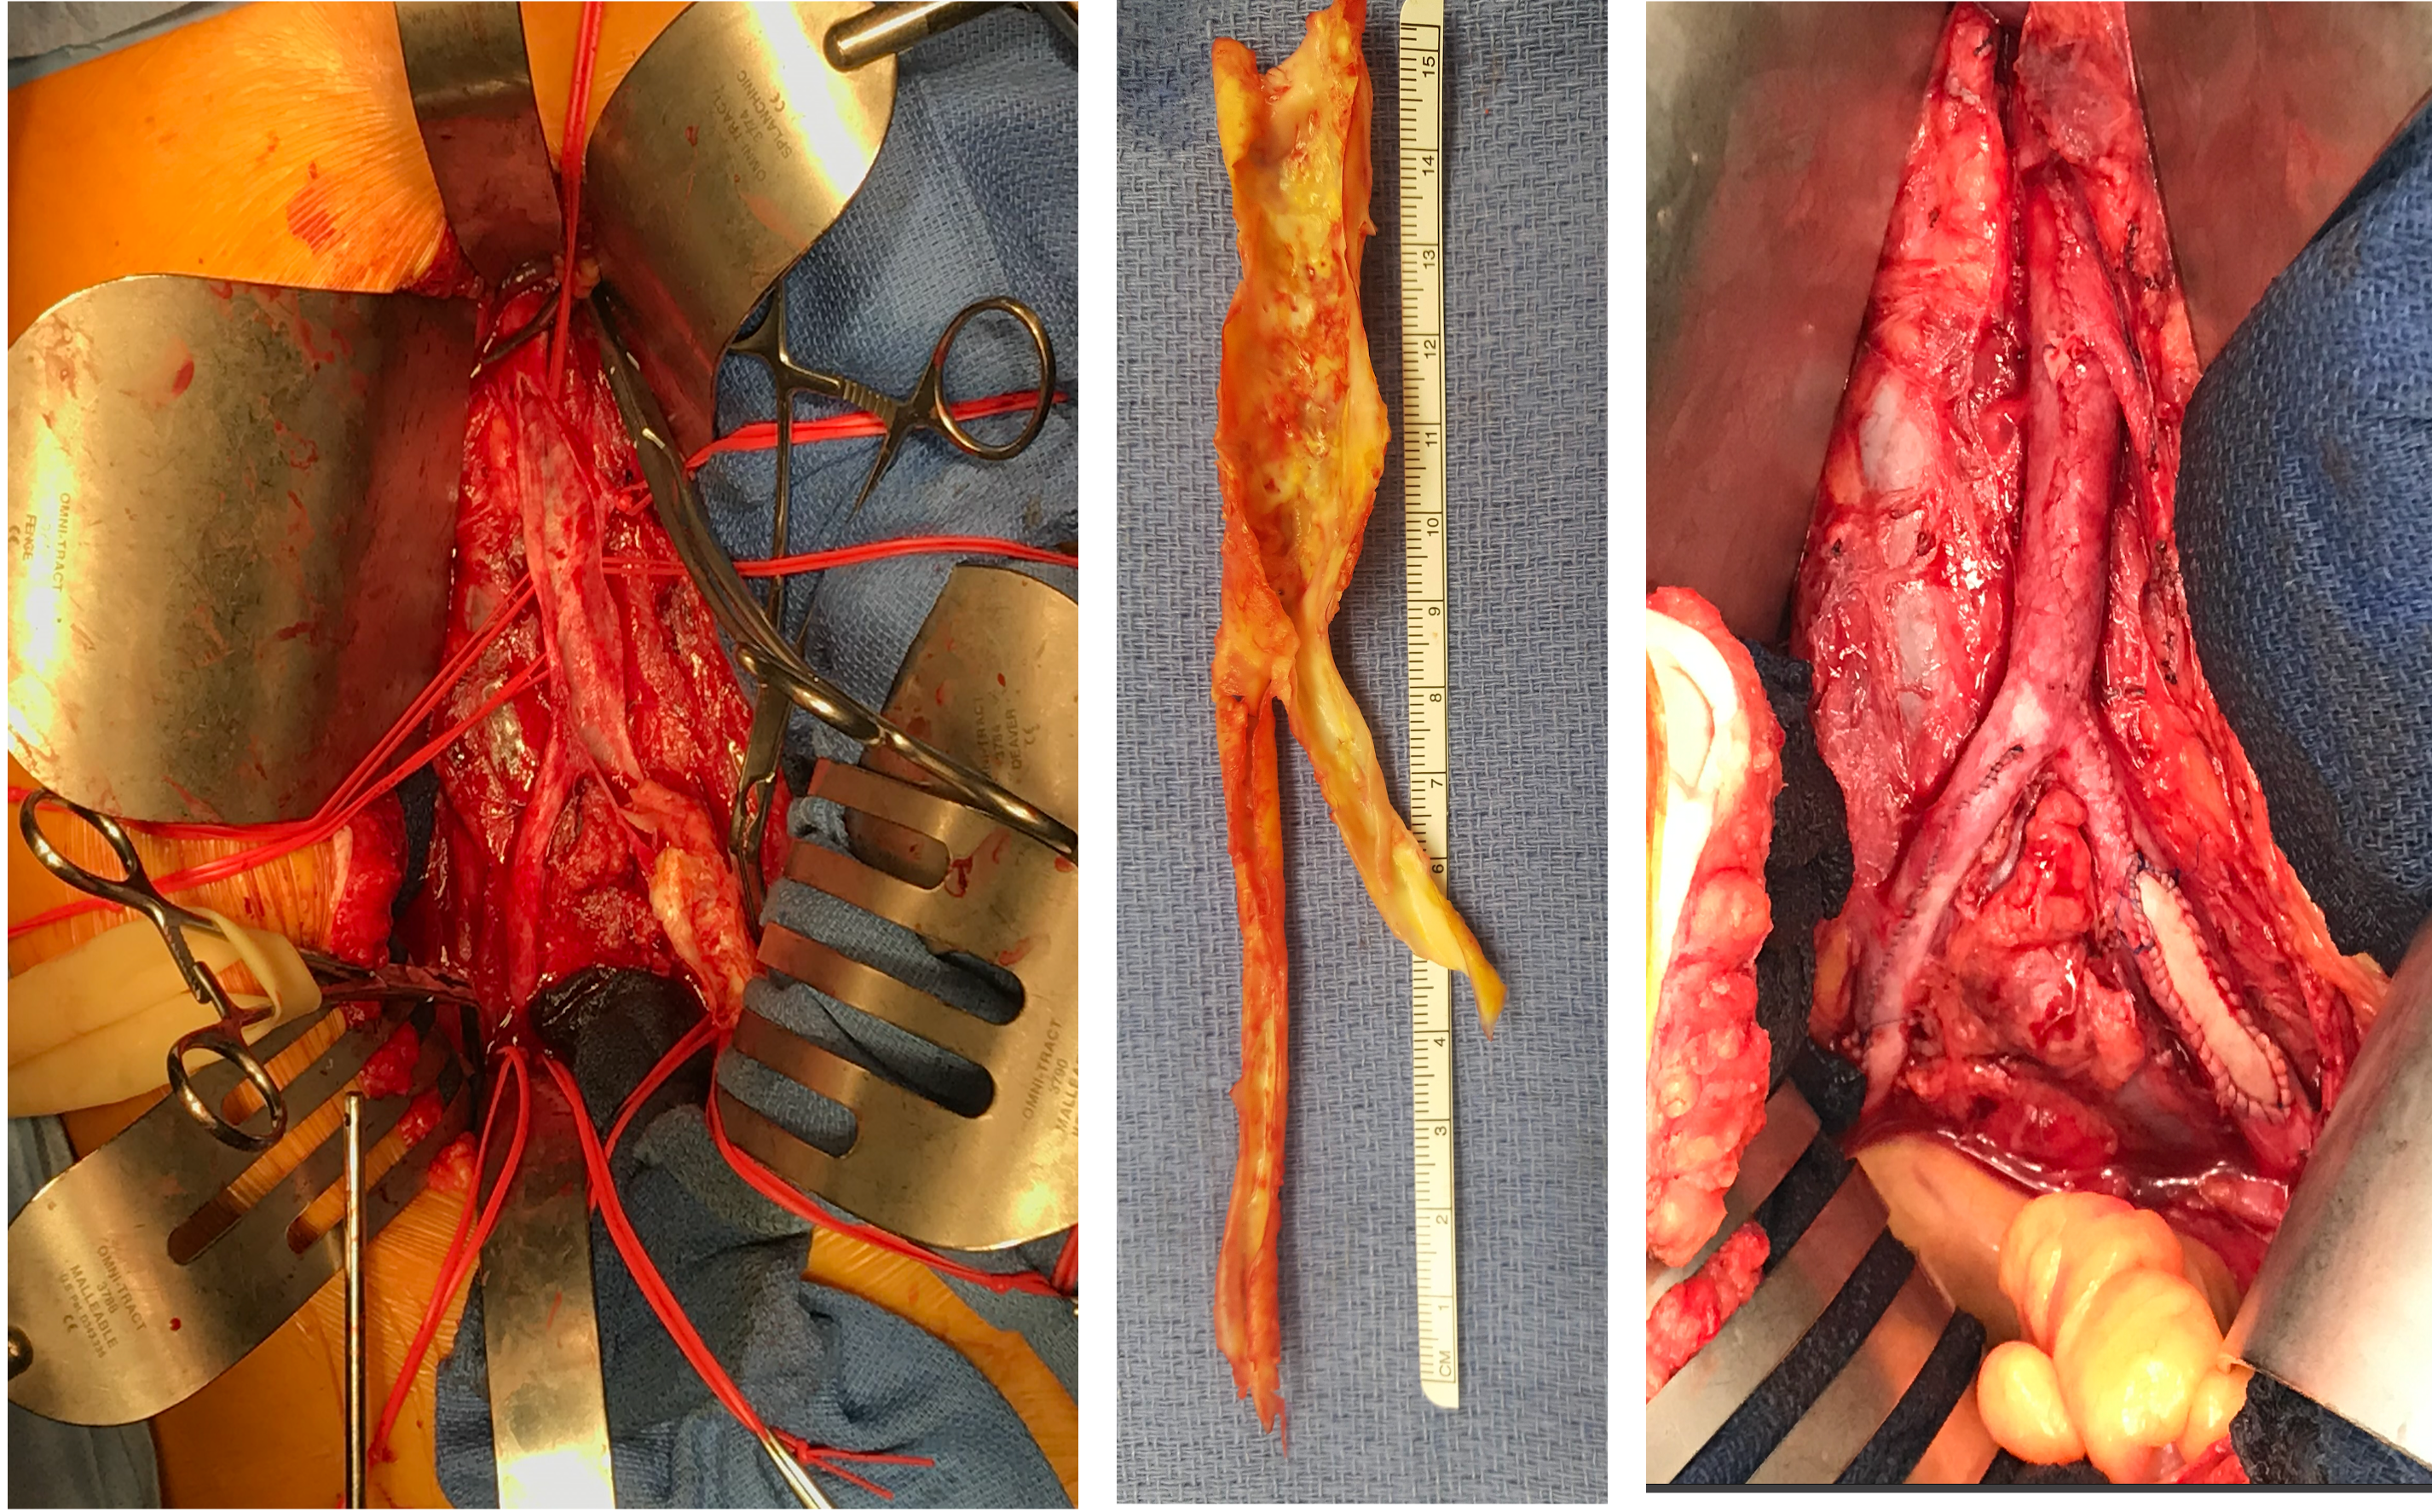 Re-evaluating aortoiliac endarterectomy: Case series shows ‘acceptable durability’